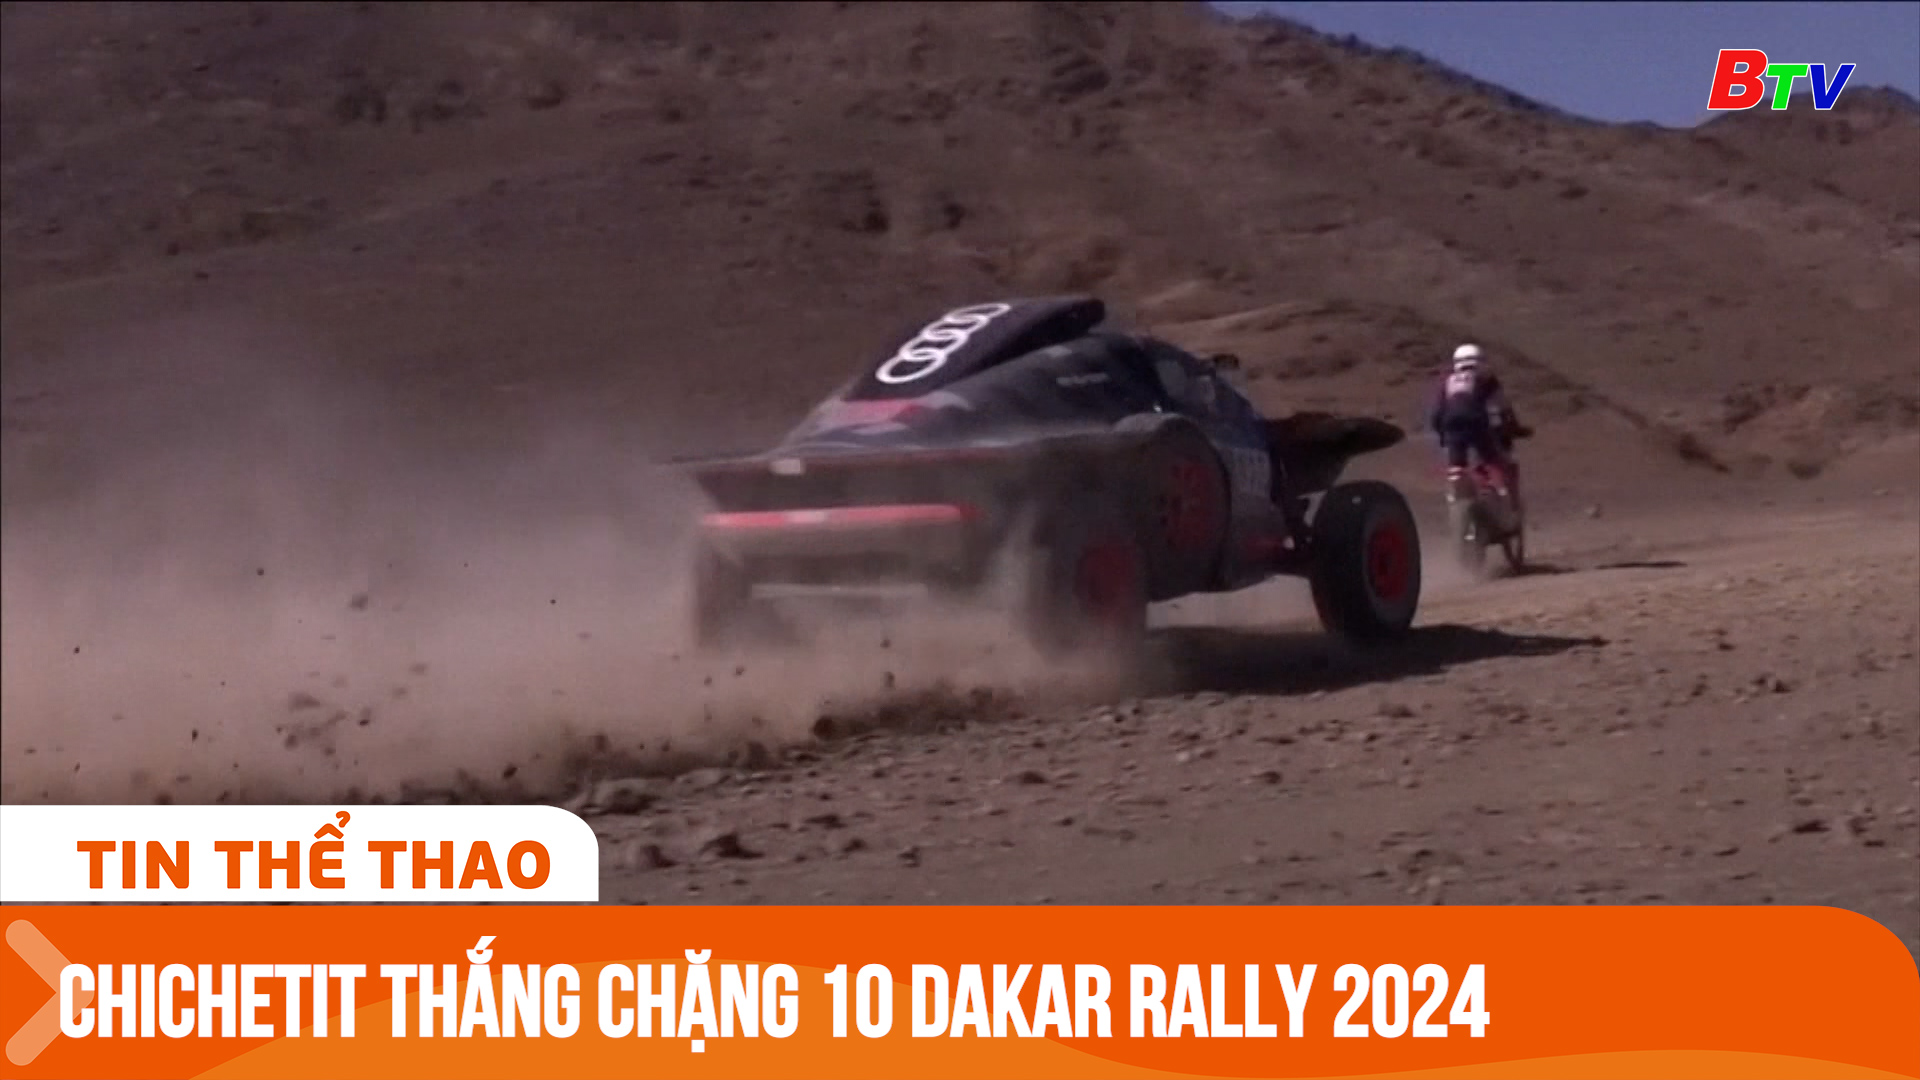 Chichetit thắng chặng 10 Dakar Rally 2024 | Tin Thể thao 24h	